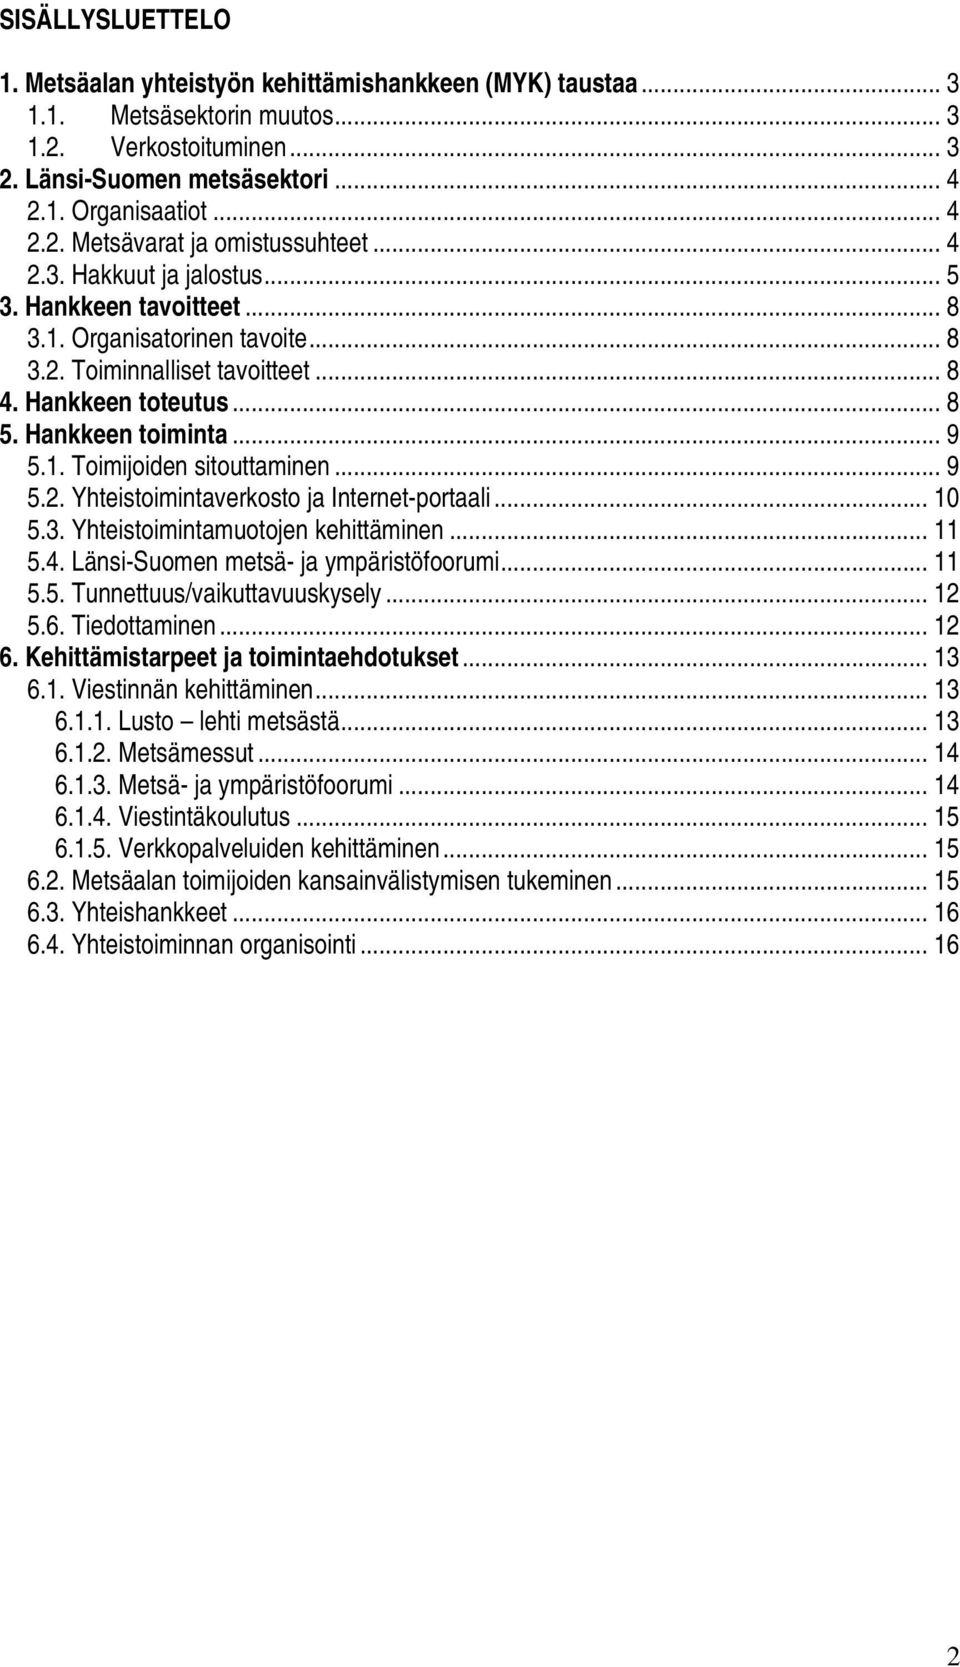 .. 9 5.2. Yhteistoimintaverkosto ja Internet-portaali... 10 5.3. Yhteistoimintamuotojen kehittäminen... 11 5.4. Länsi-Suomen metsä- ja ympäristöfoorumi... 11 5.5. Tunnettuus/vaikuttavuuskysely... 12 5.